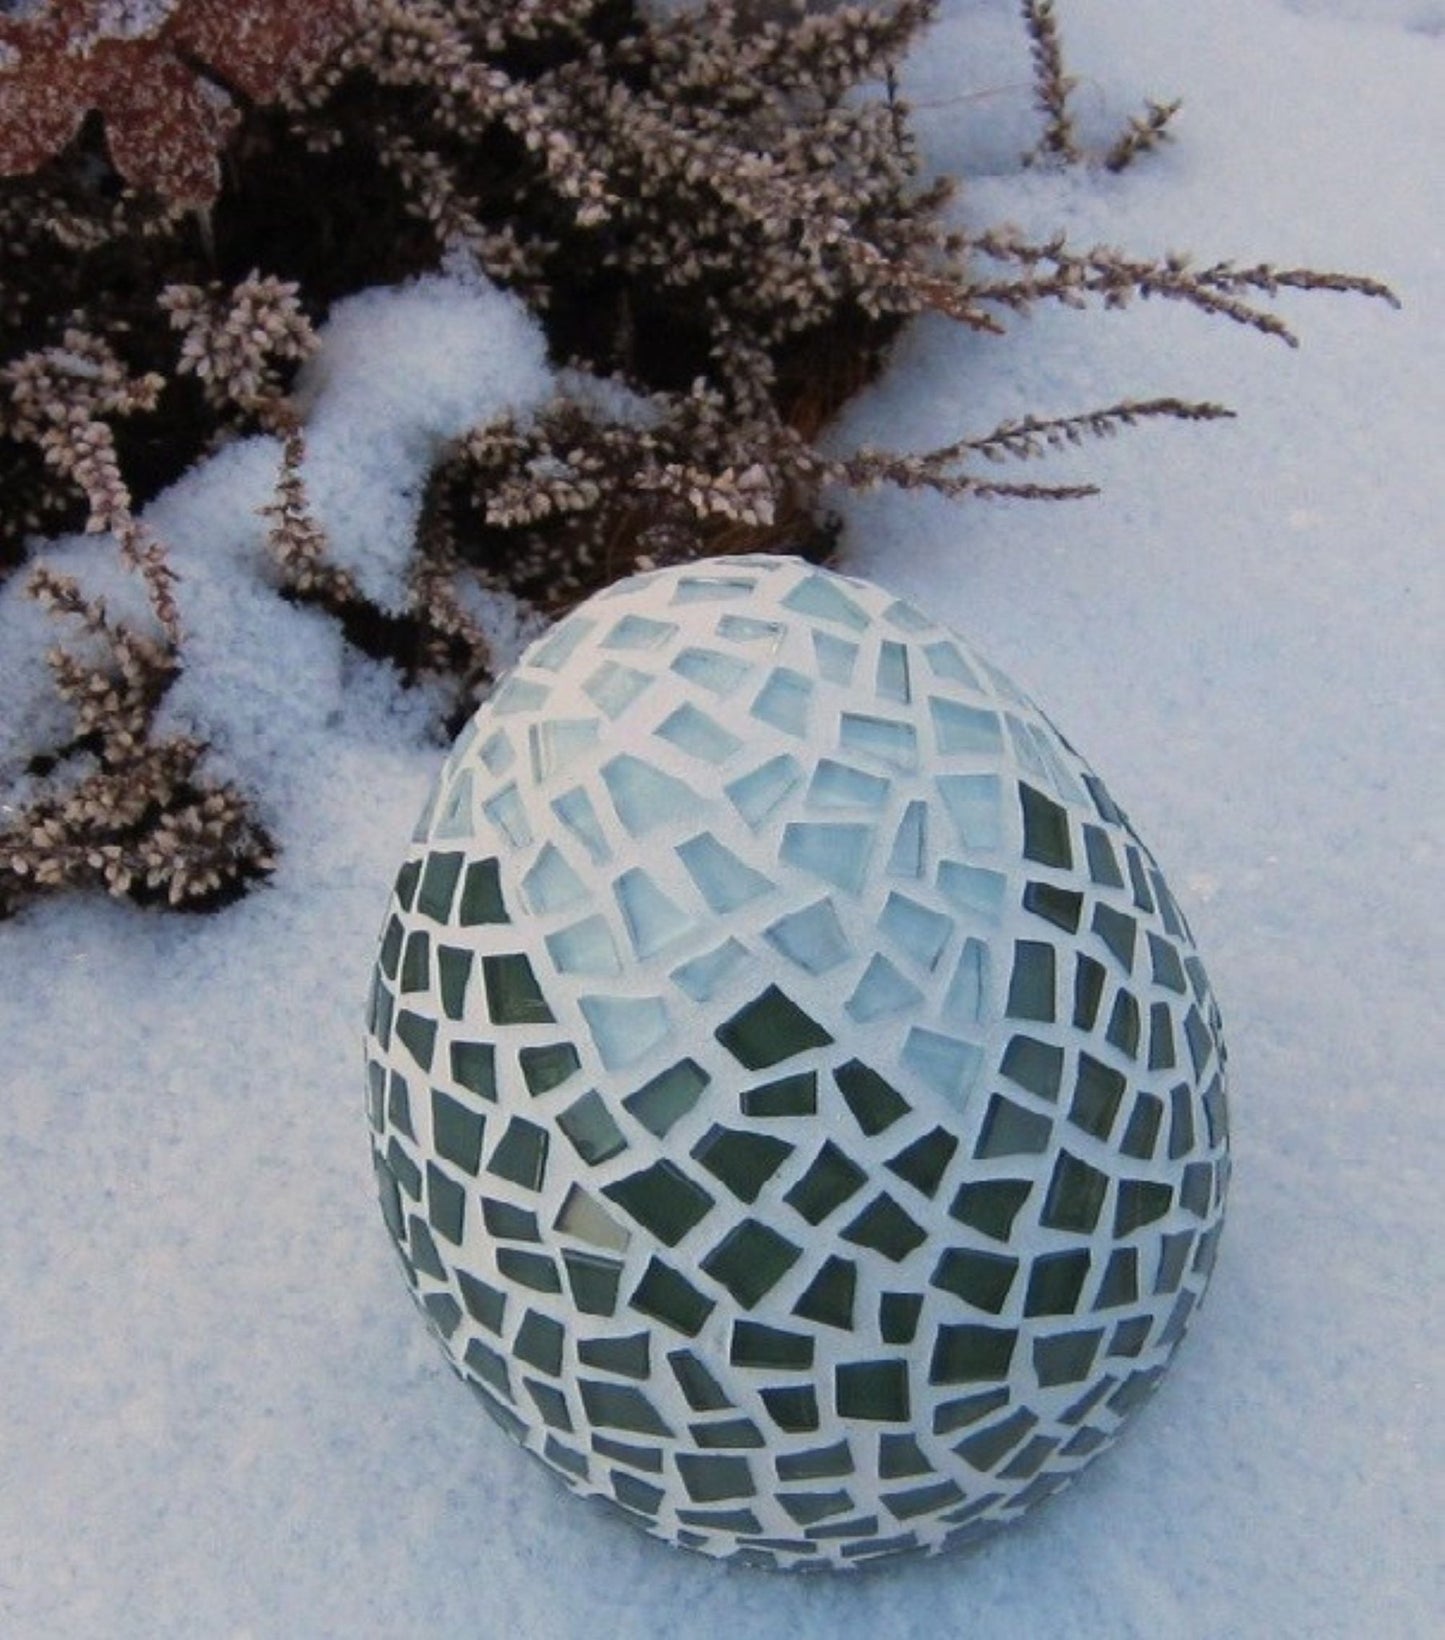 Osterei aufgeschlagen grün weiß oder rot weiß 15 cm - handgemacht - Mosaikkasten abverkauf Deko für draußen